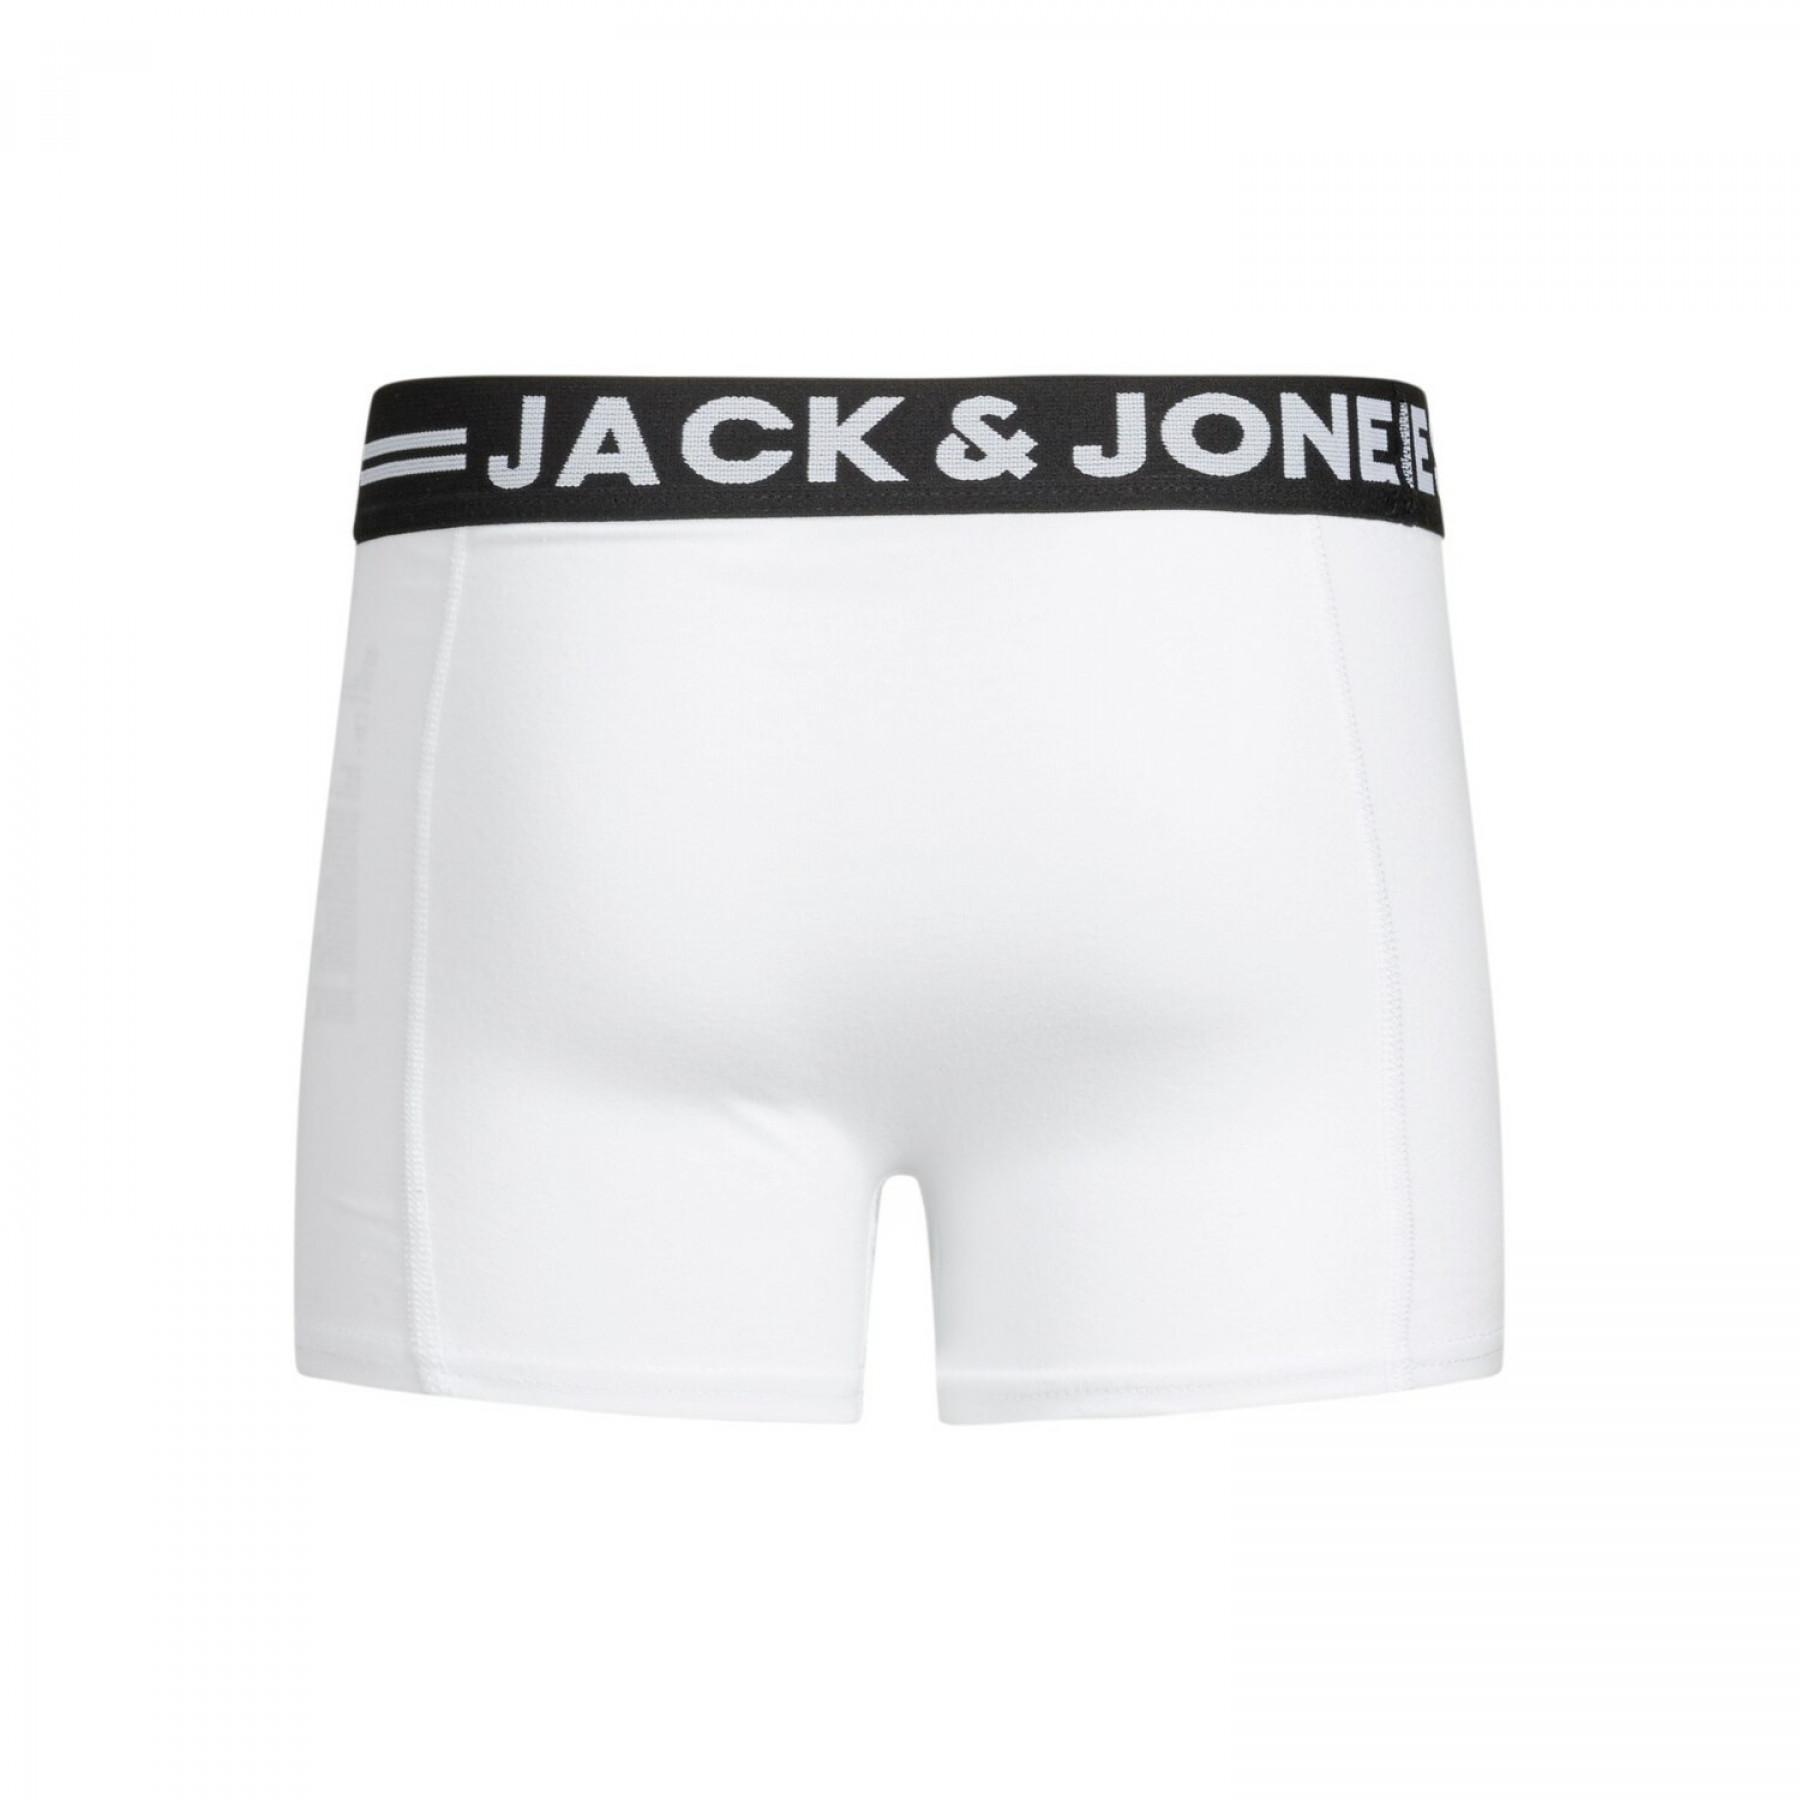 Confezione di 3 boxer Jack & Jones